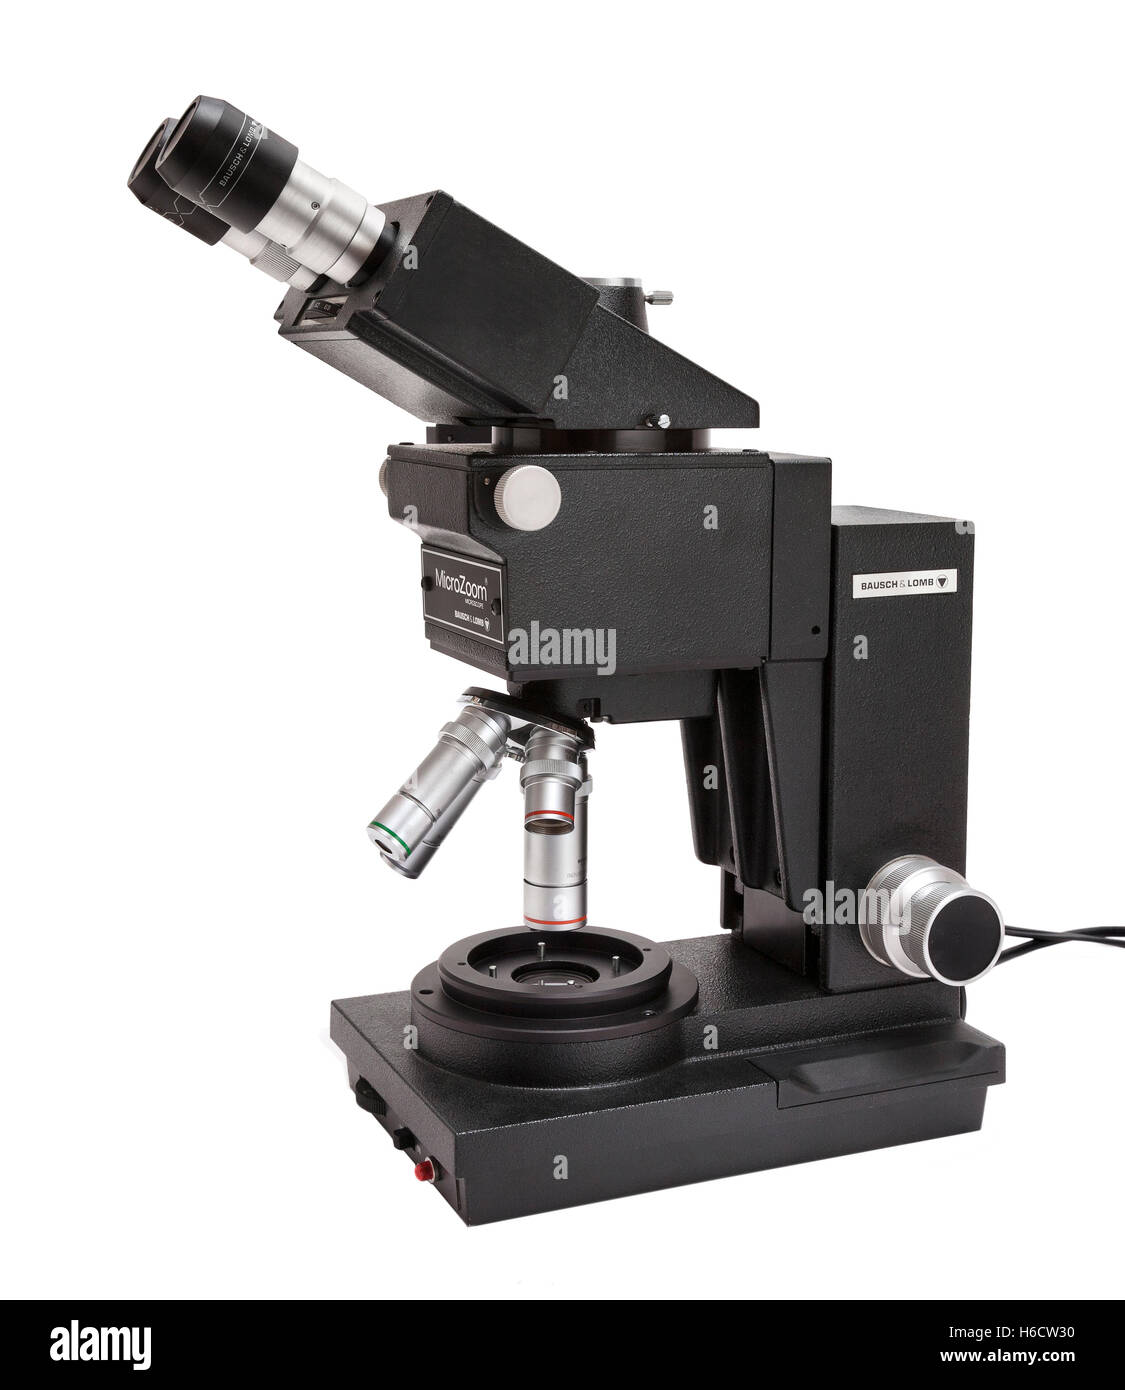 Bausch & Lomb Microzoom microscopio compuesto, utilizado ampliamente en la industria de semiconductores para inspección de obleas de silicio. Foto de stock